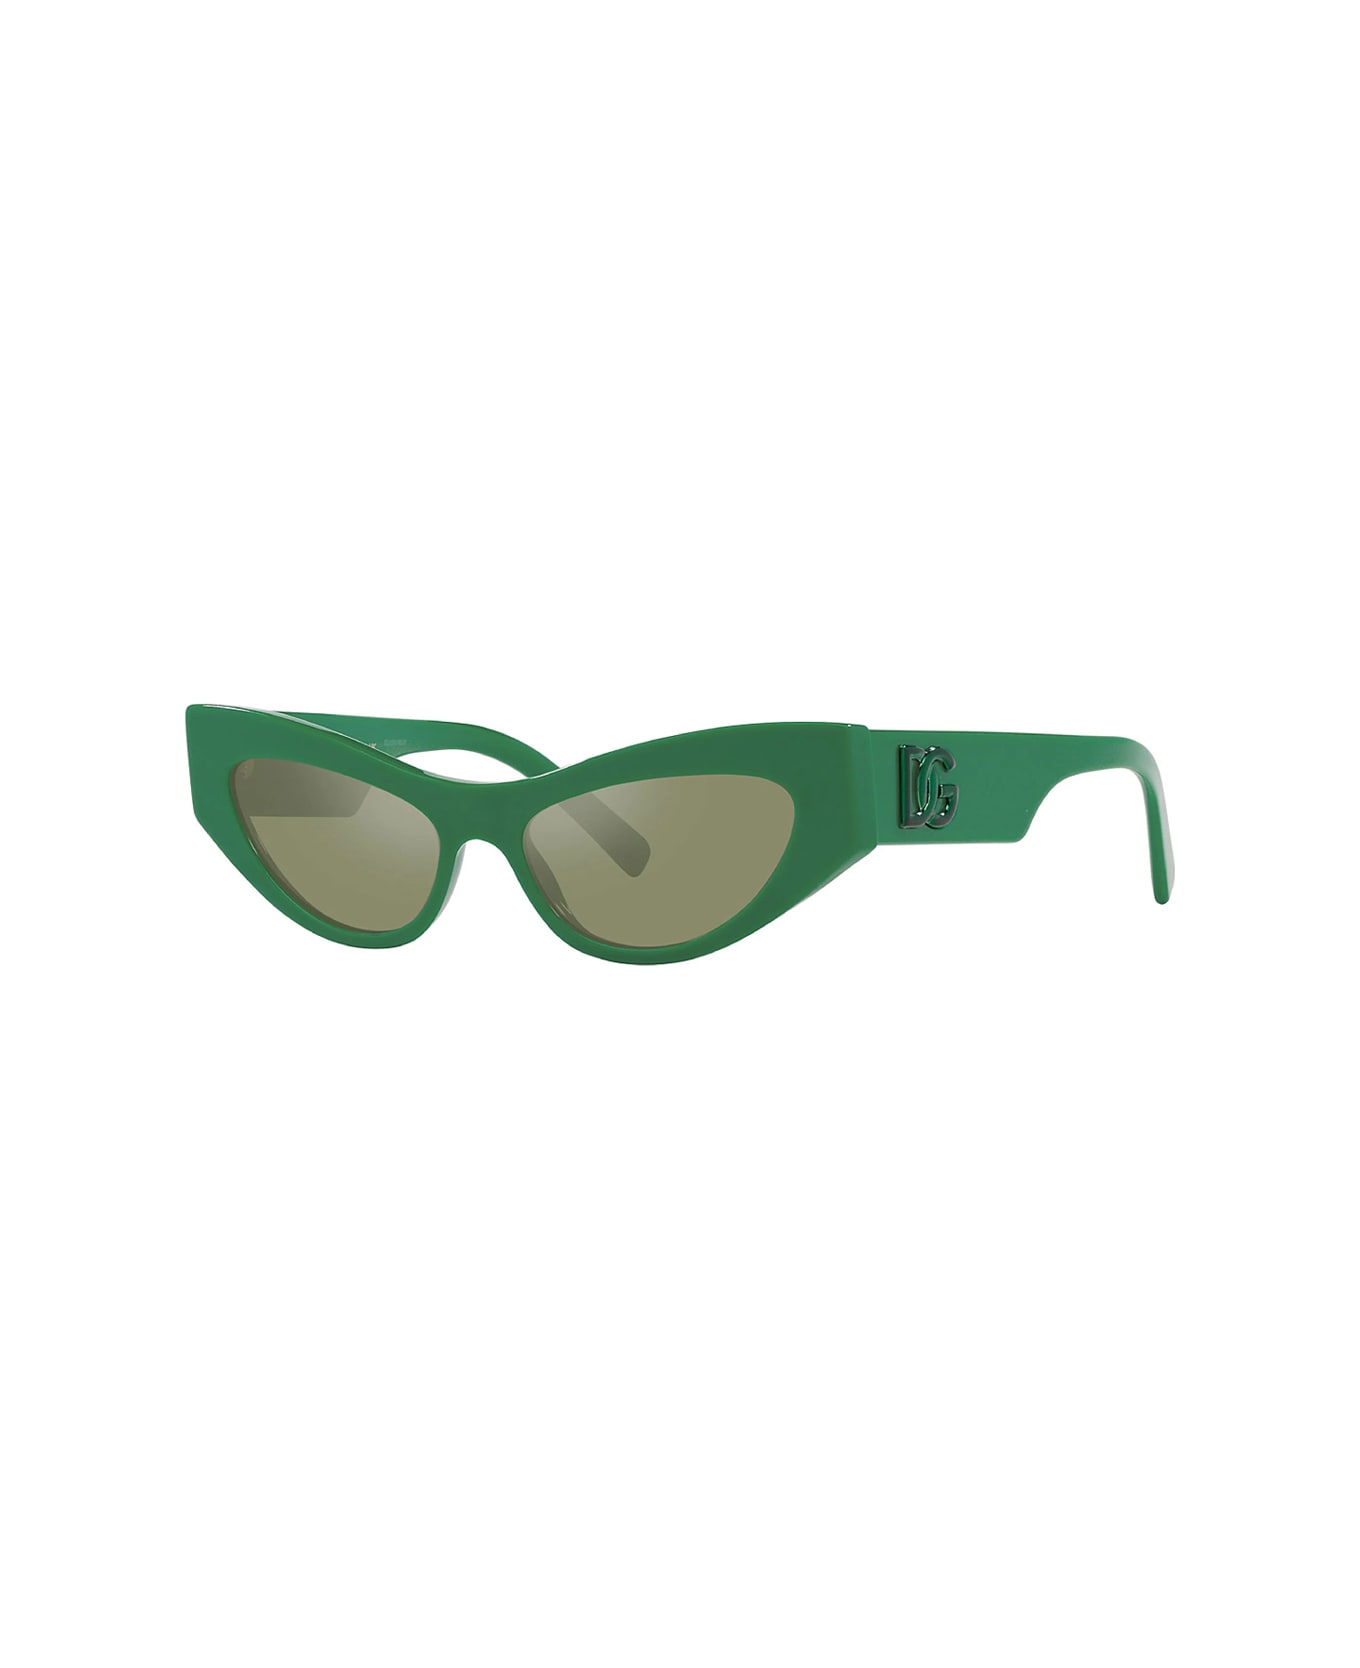 Dolce & Gabbana Eyewear Dg4450 331152 Sunglasses - Verde サングラス